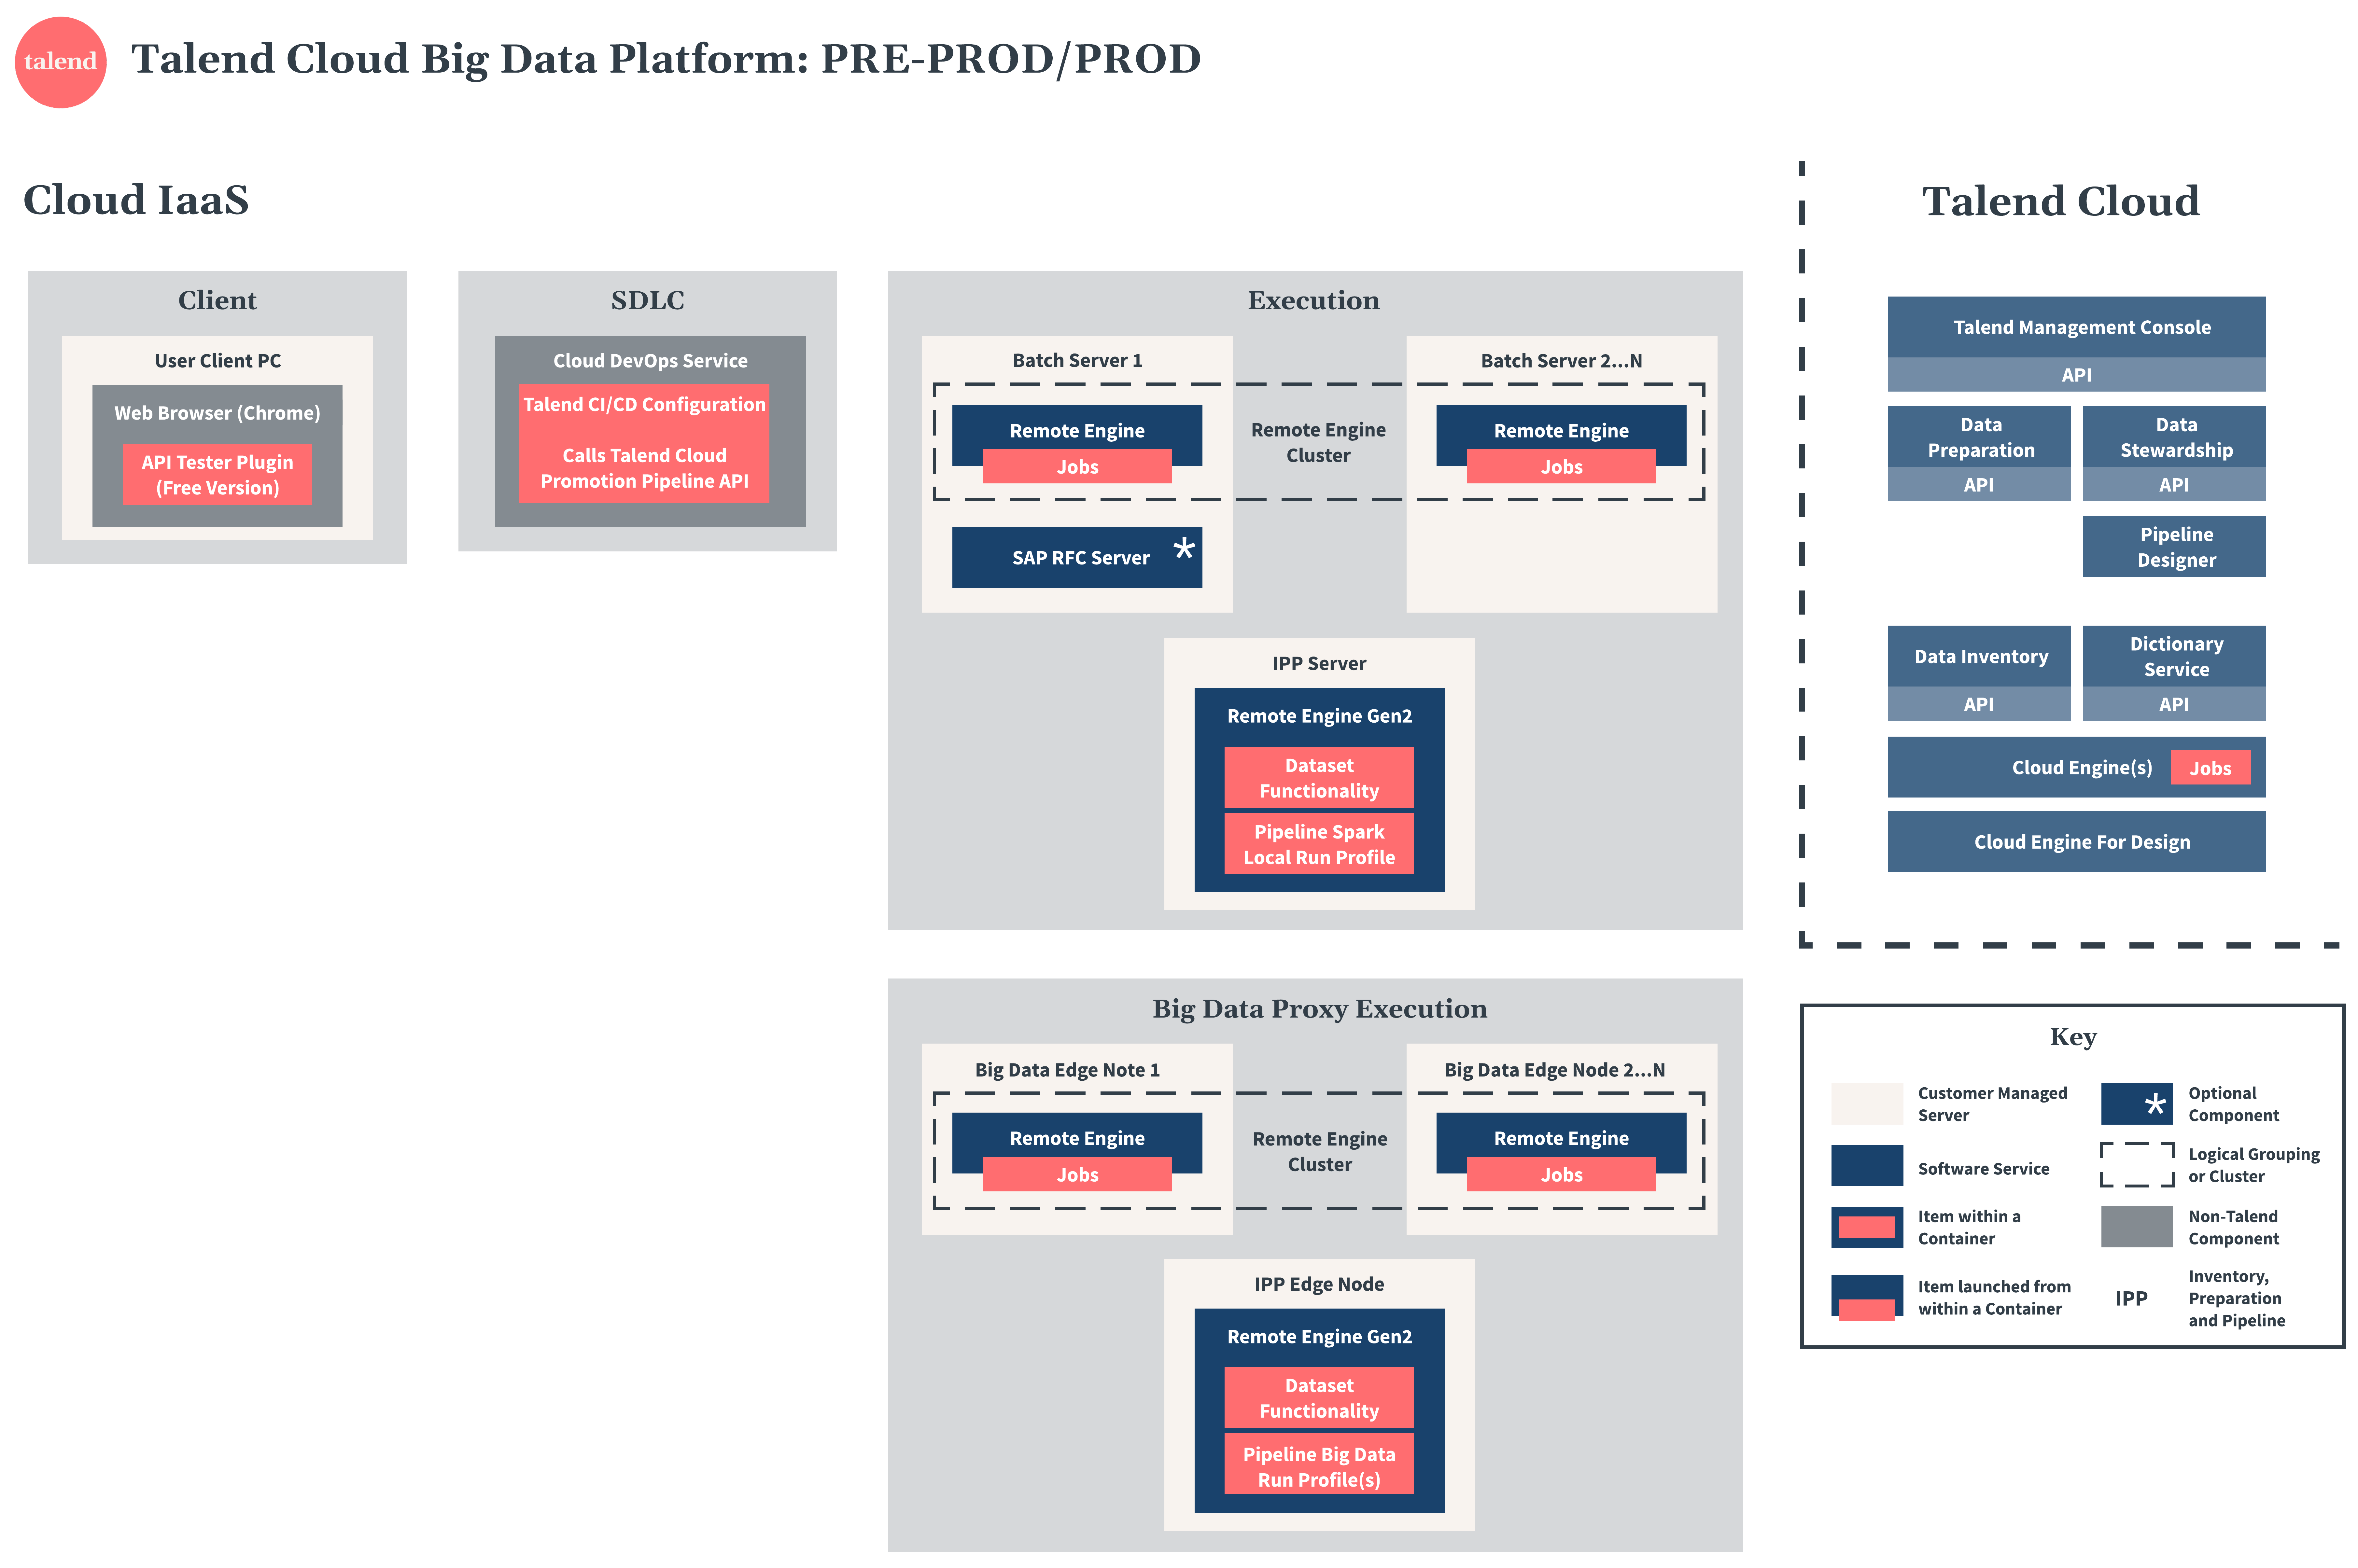 Talend Cloud Big Data Platform Diagramm zu Vorproduktion und Produktion.